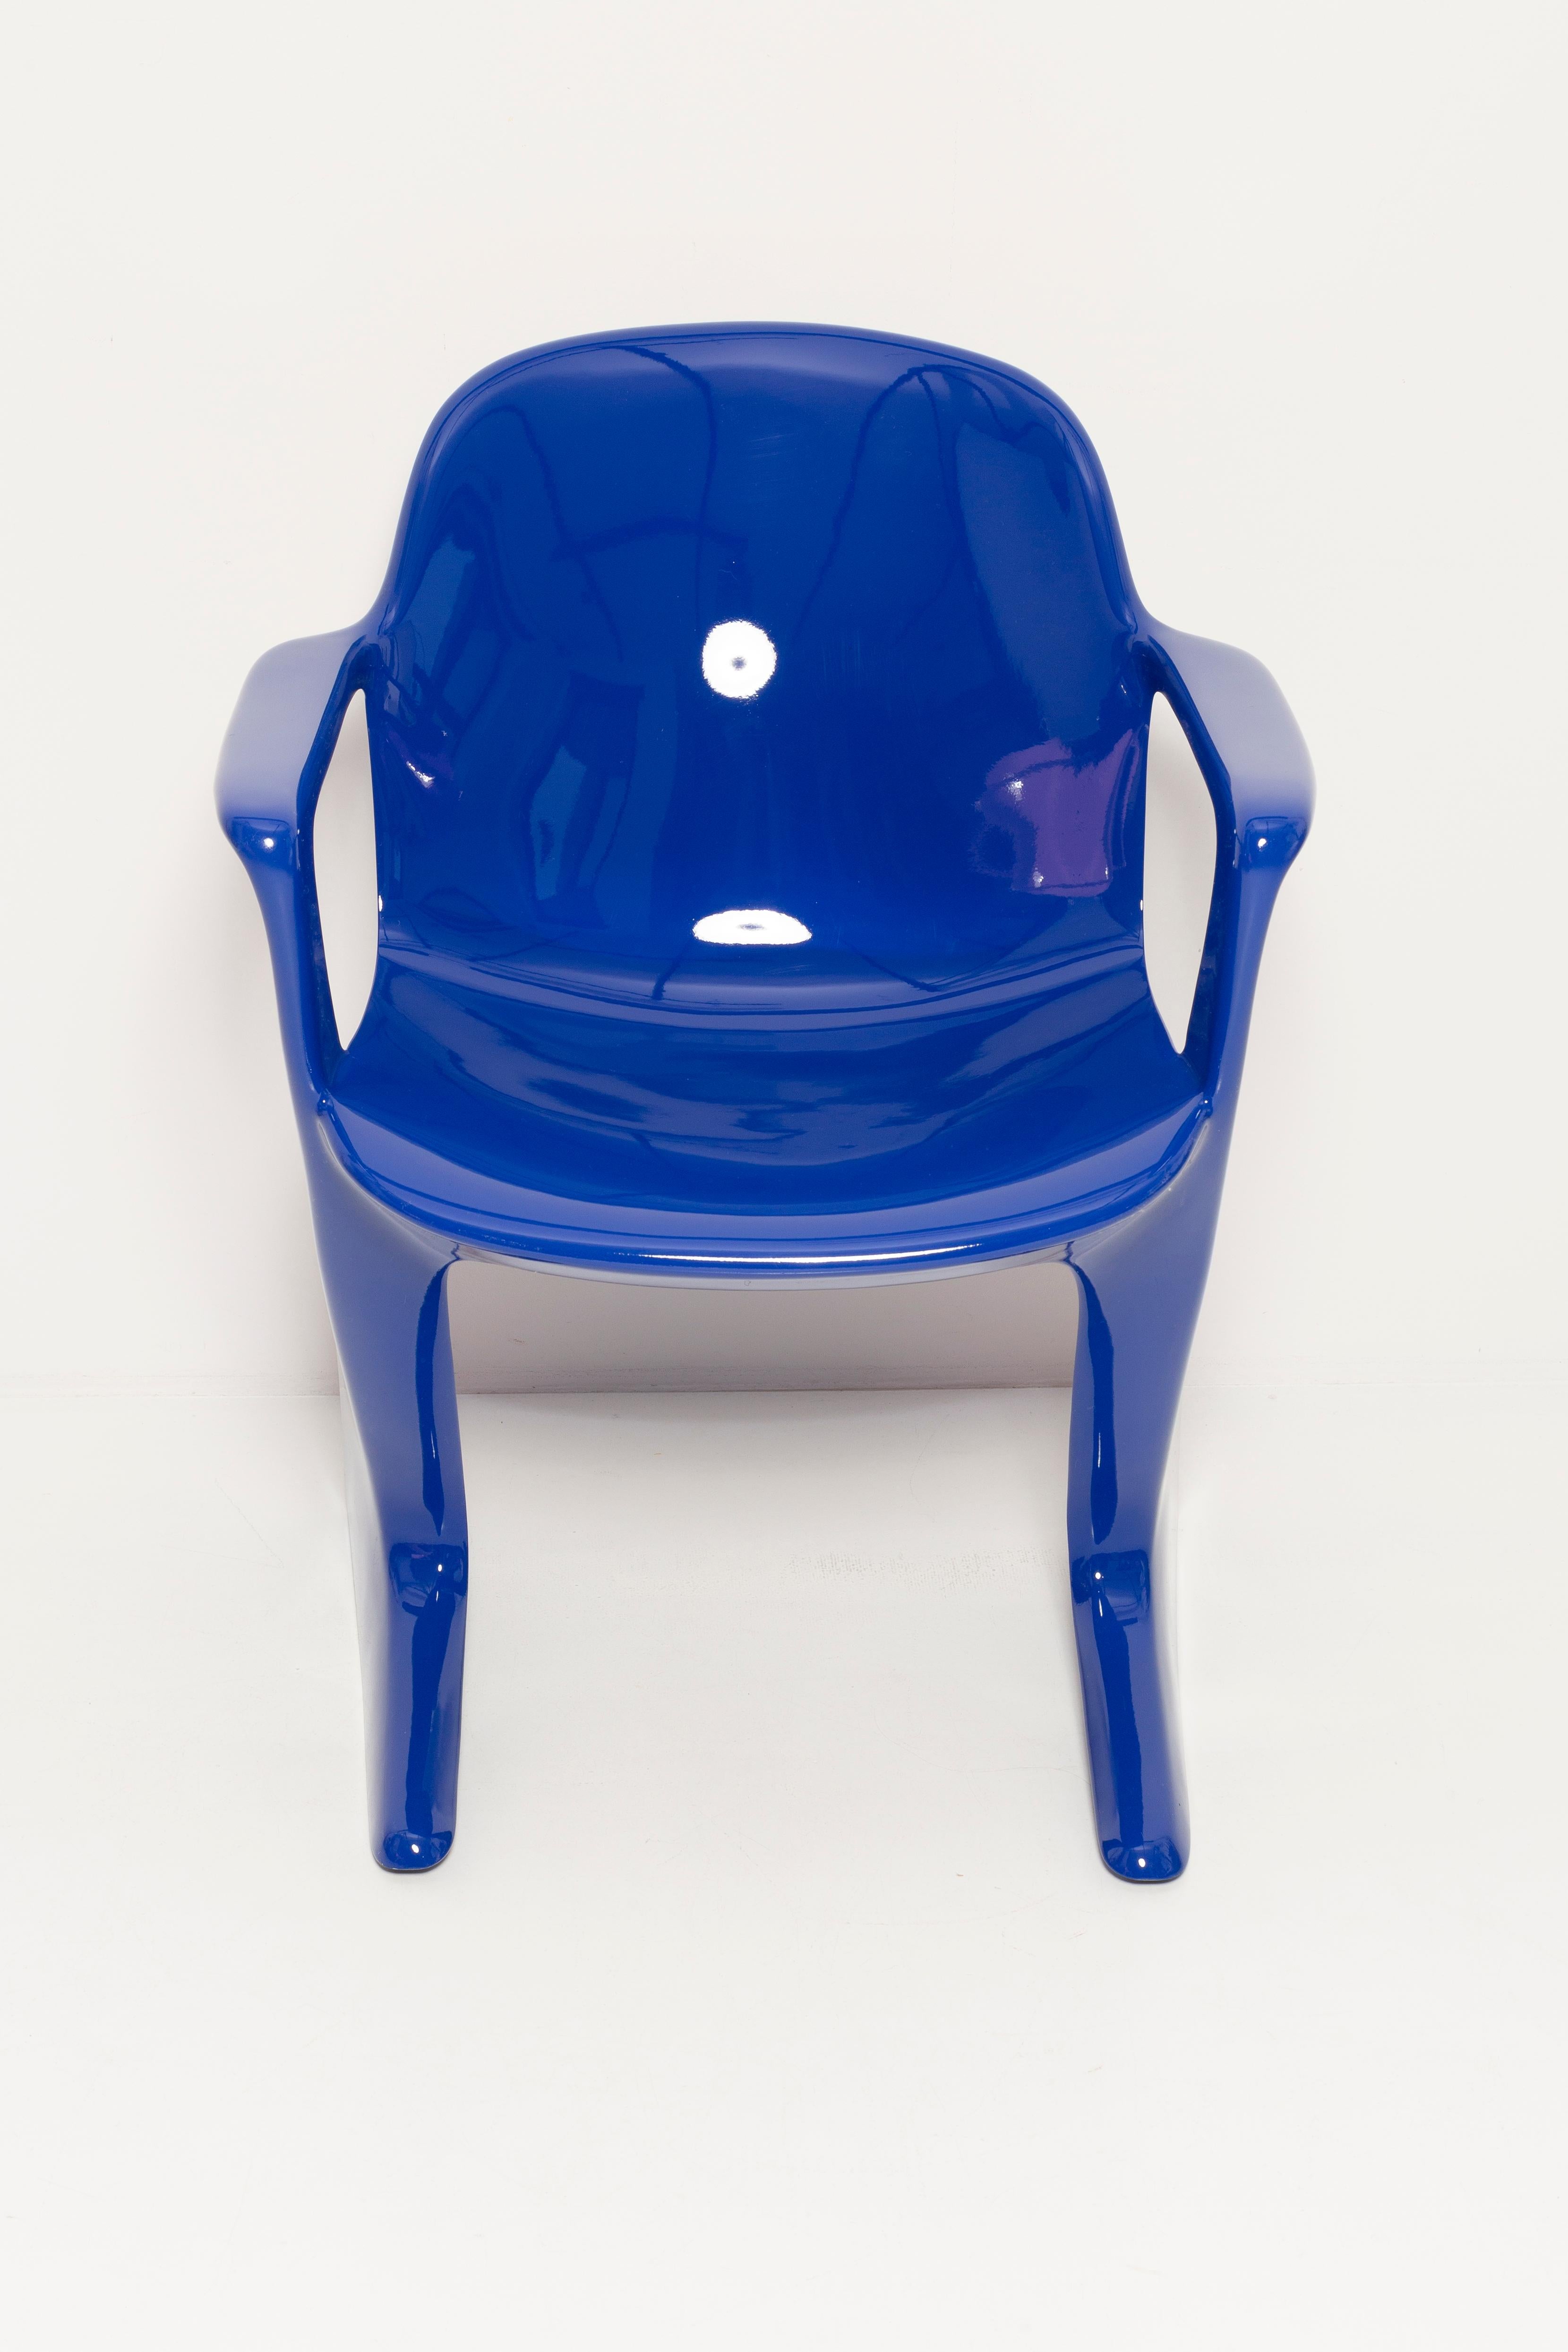 Ensemble de huit chaises Kangourou bleu ultramarine, par Ernst Moeckl, Allemagne, 1968 Excellent état - En vente à 05-080 Hornowek, PL